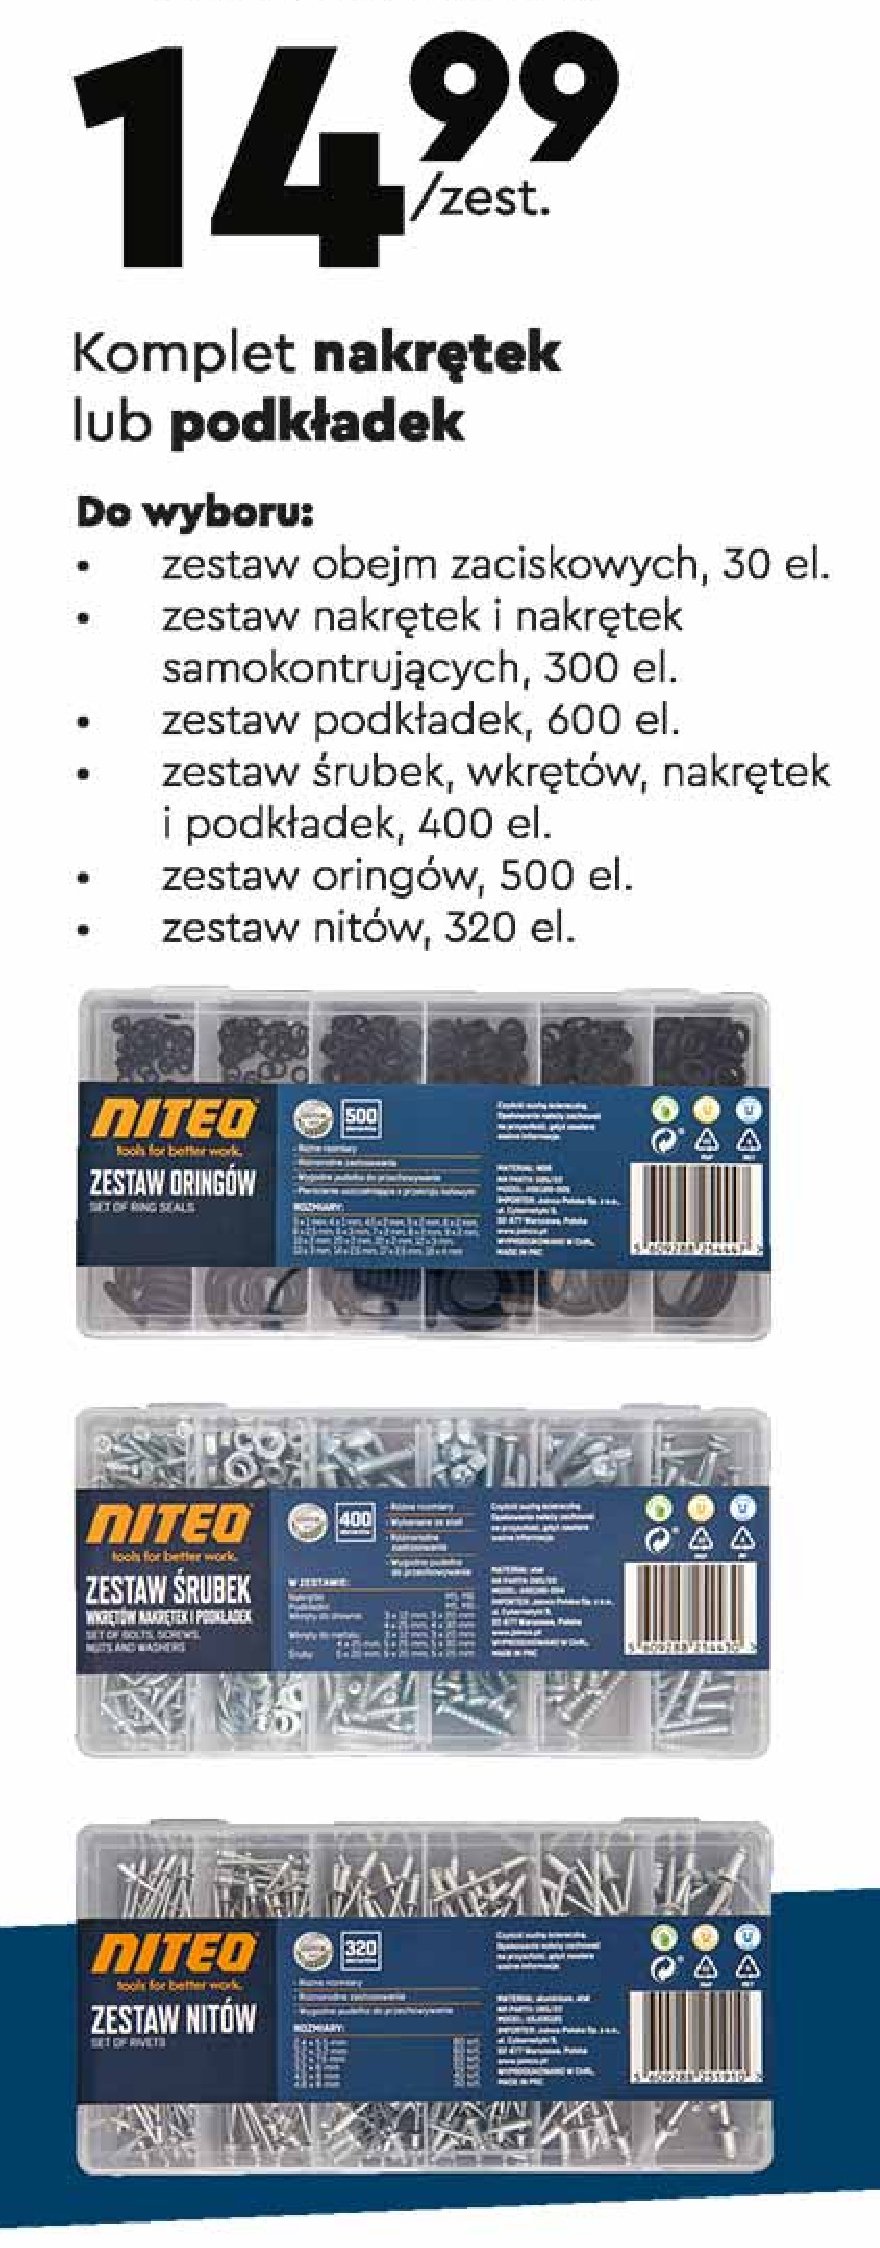 Zestaw podkładek Niteo tools promocje